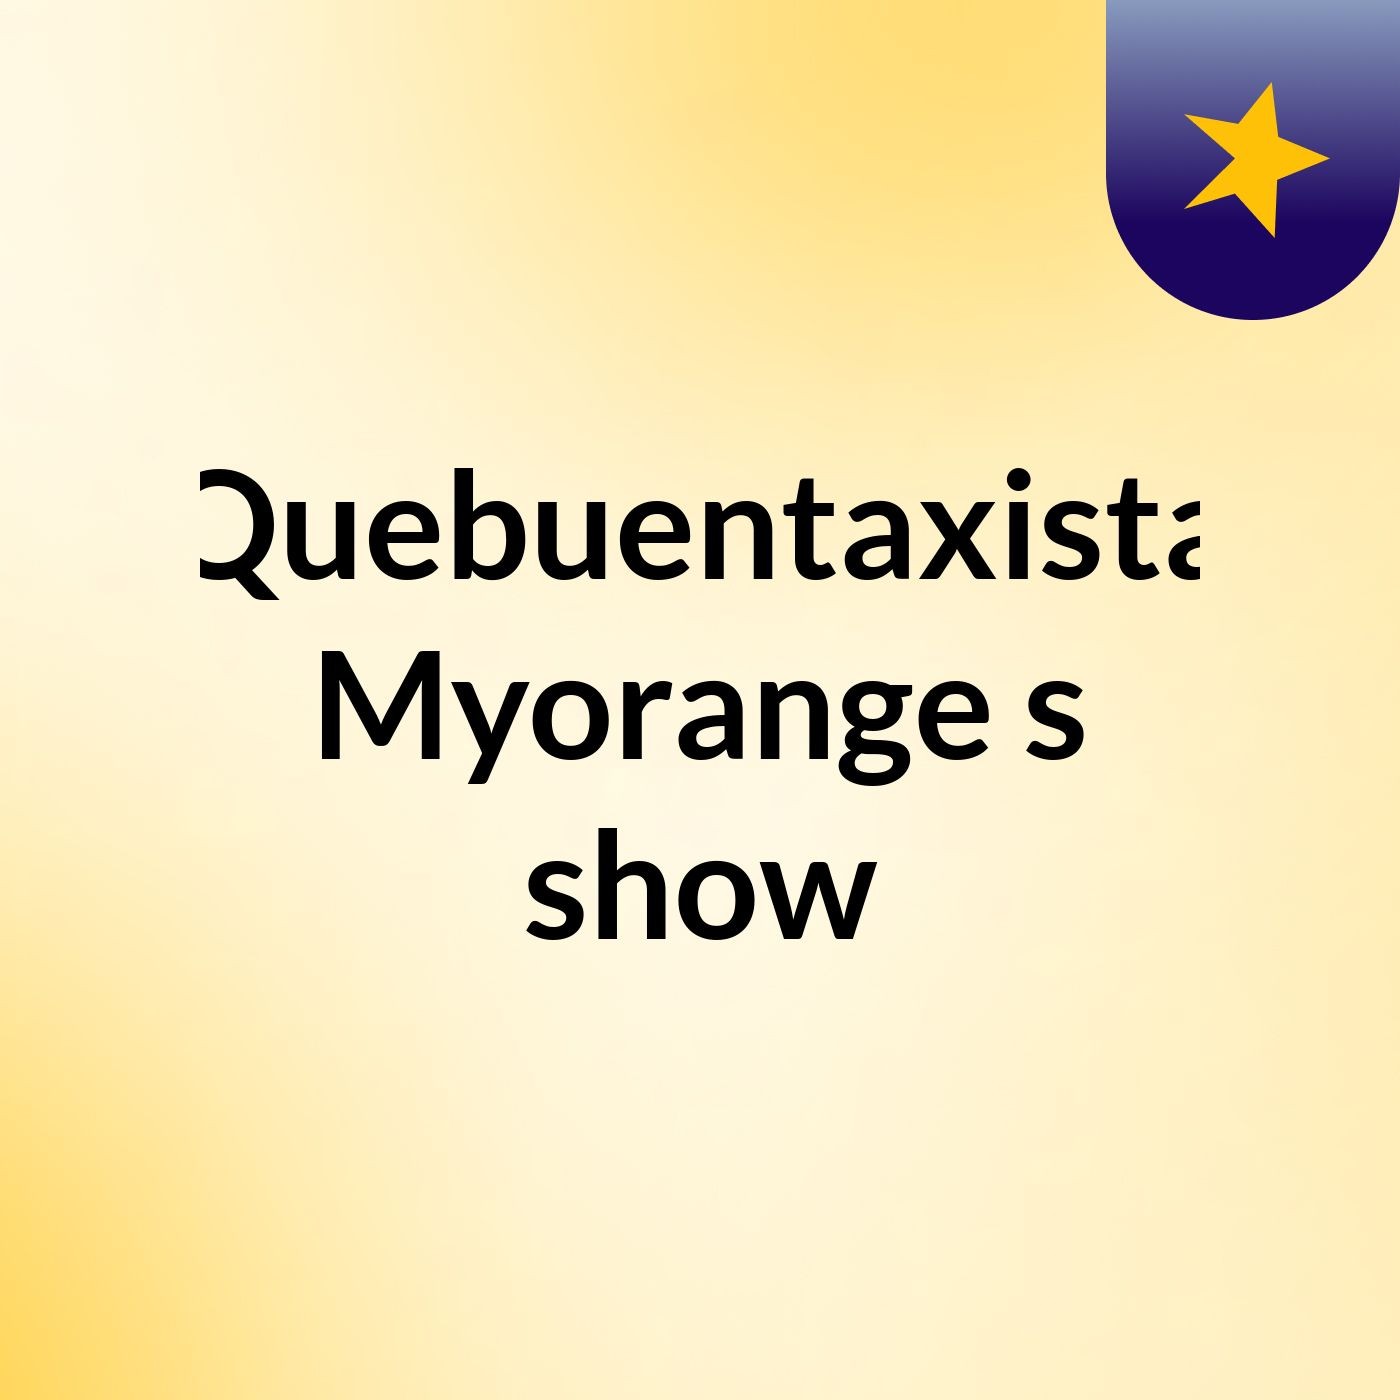 Quebuentaxista Myorange's show